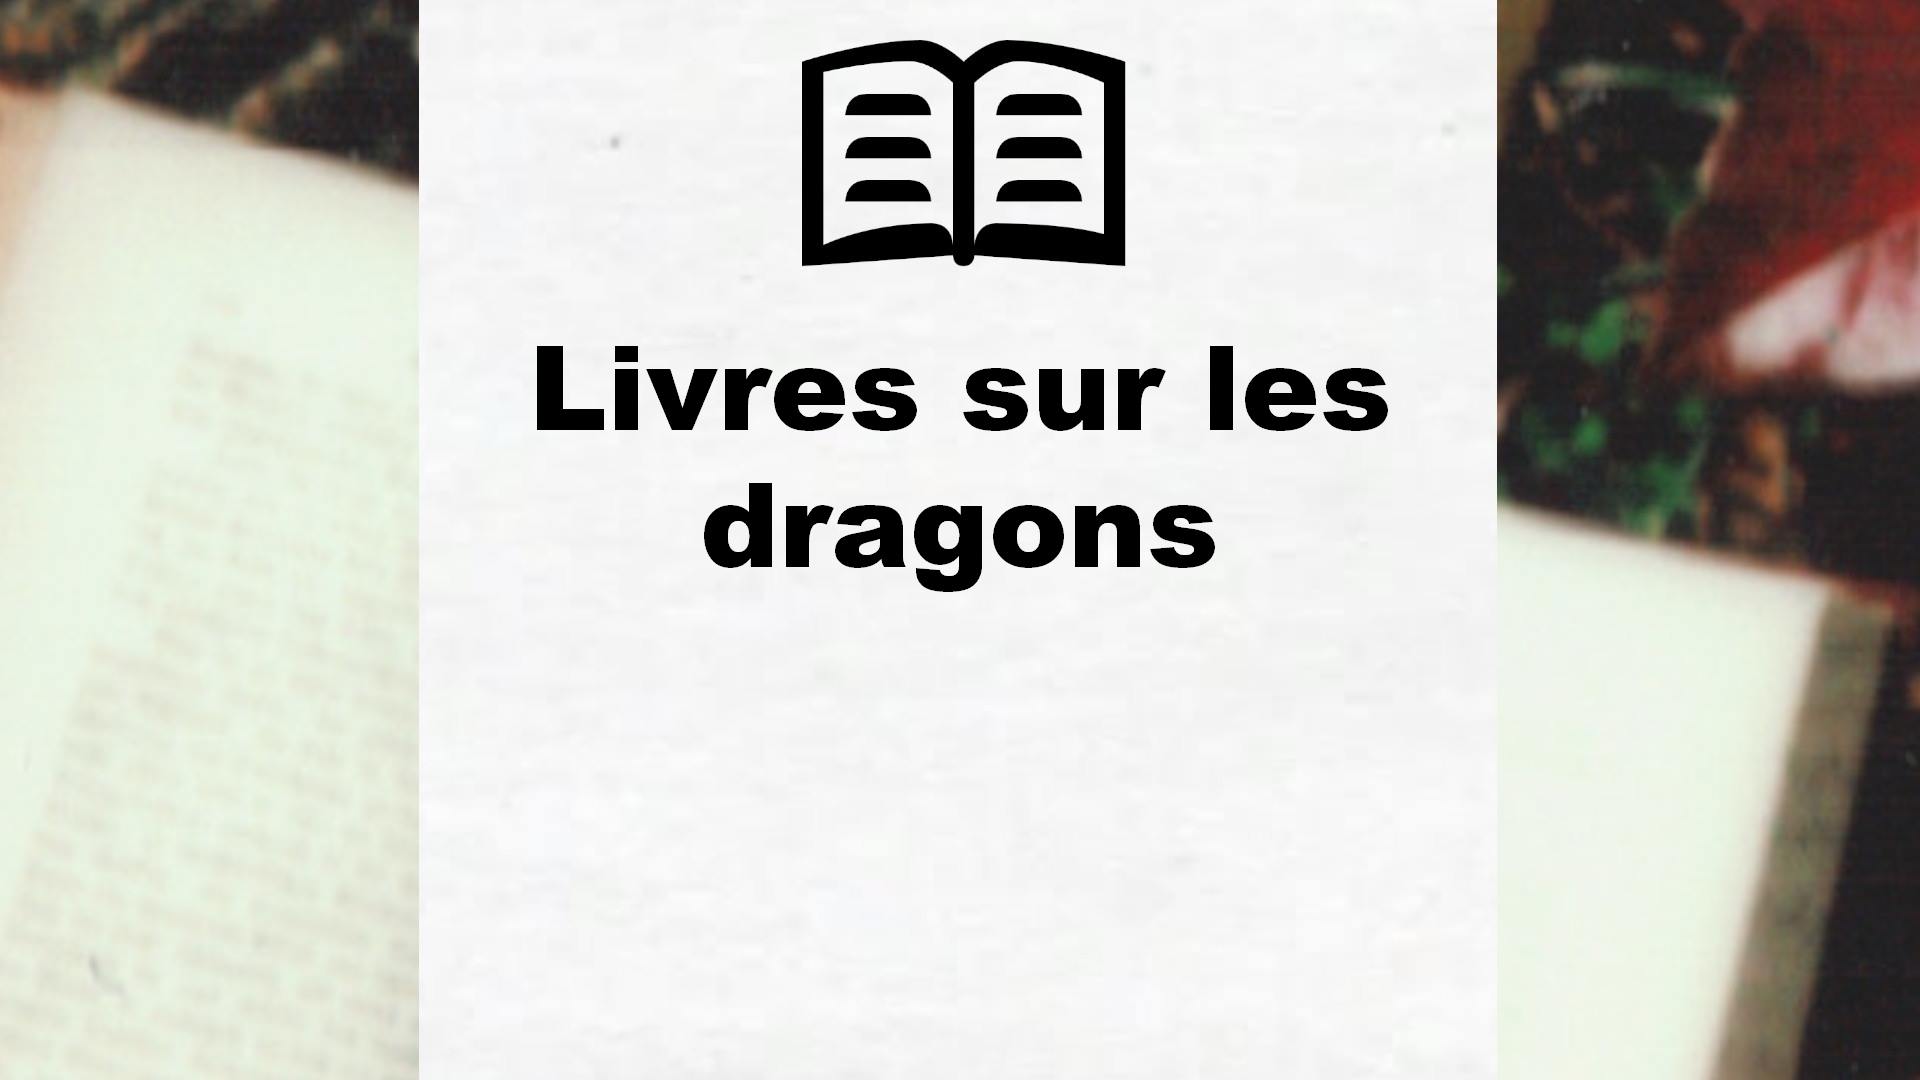 Livres sur les dragons